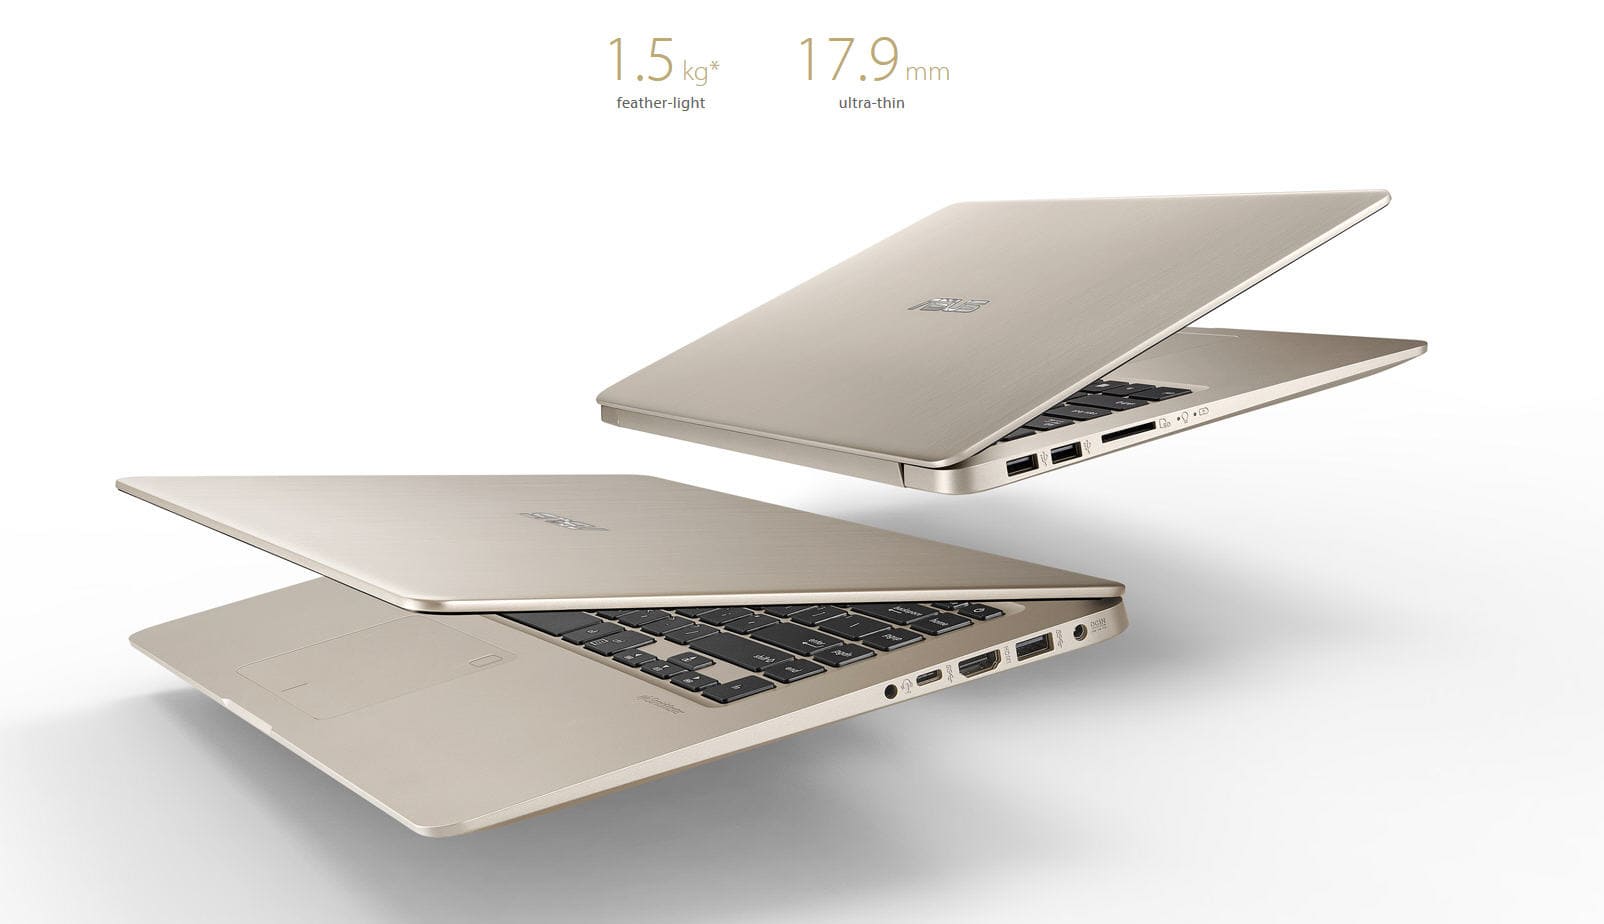 Đánh giá laptop Asus S510: hiệu năng tốt, thiết kế xuất sắc trong phân khúc giá rẻ